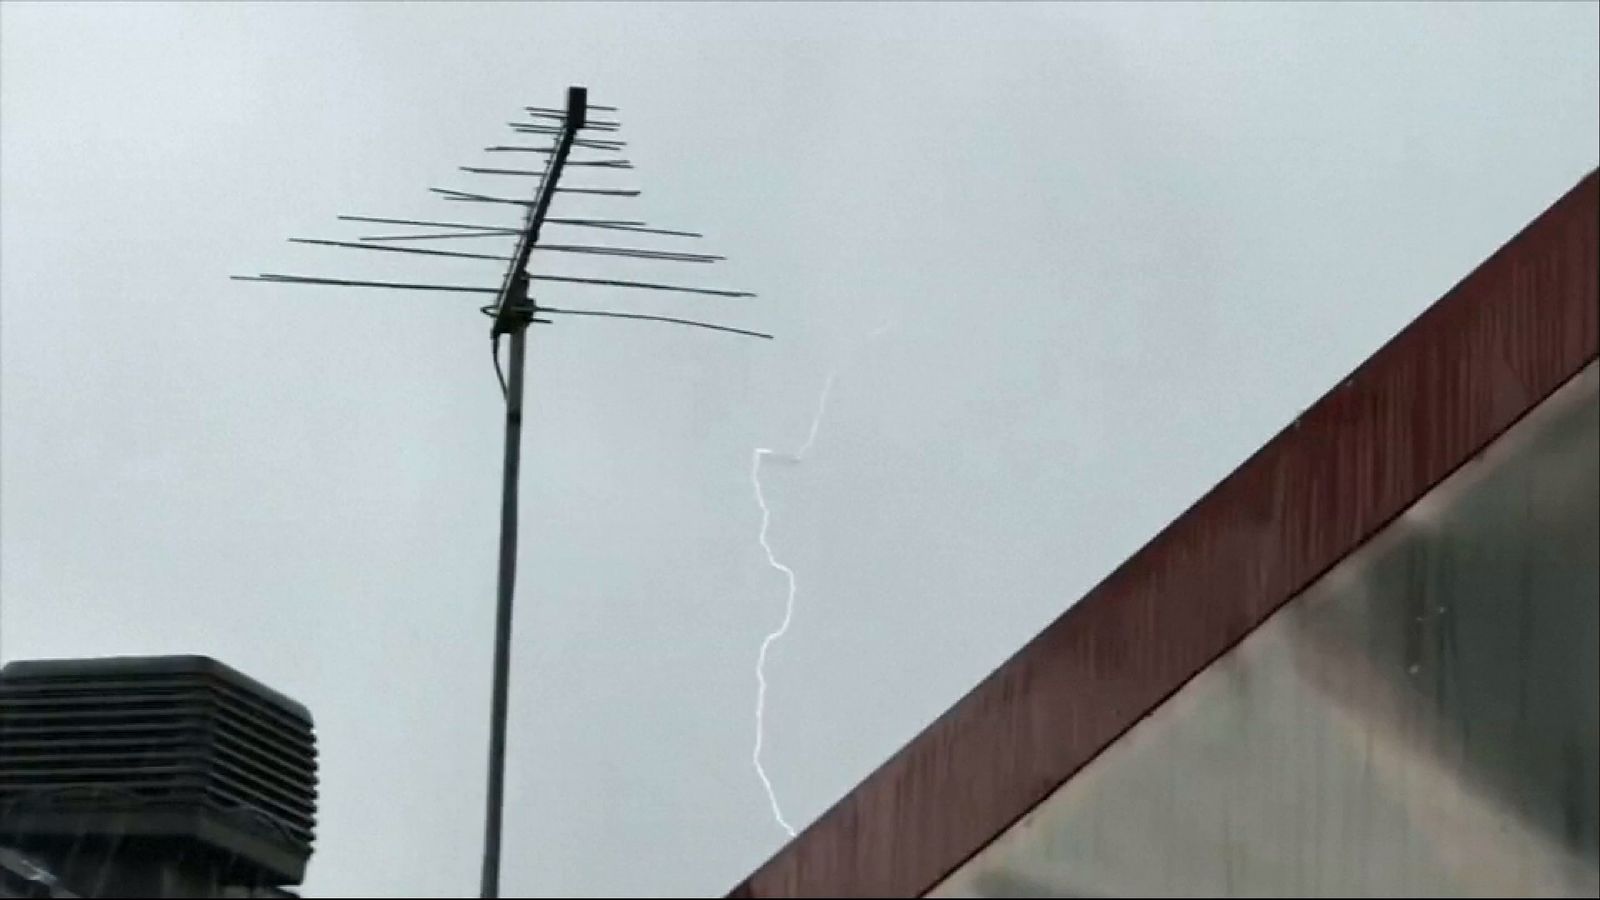 Lightning appears to strike plane in Australia | News UK Video News ...